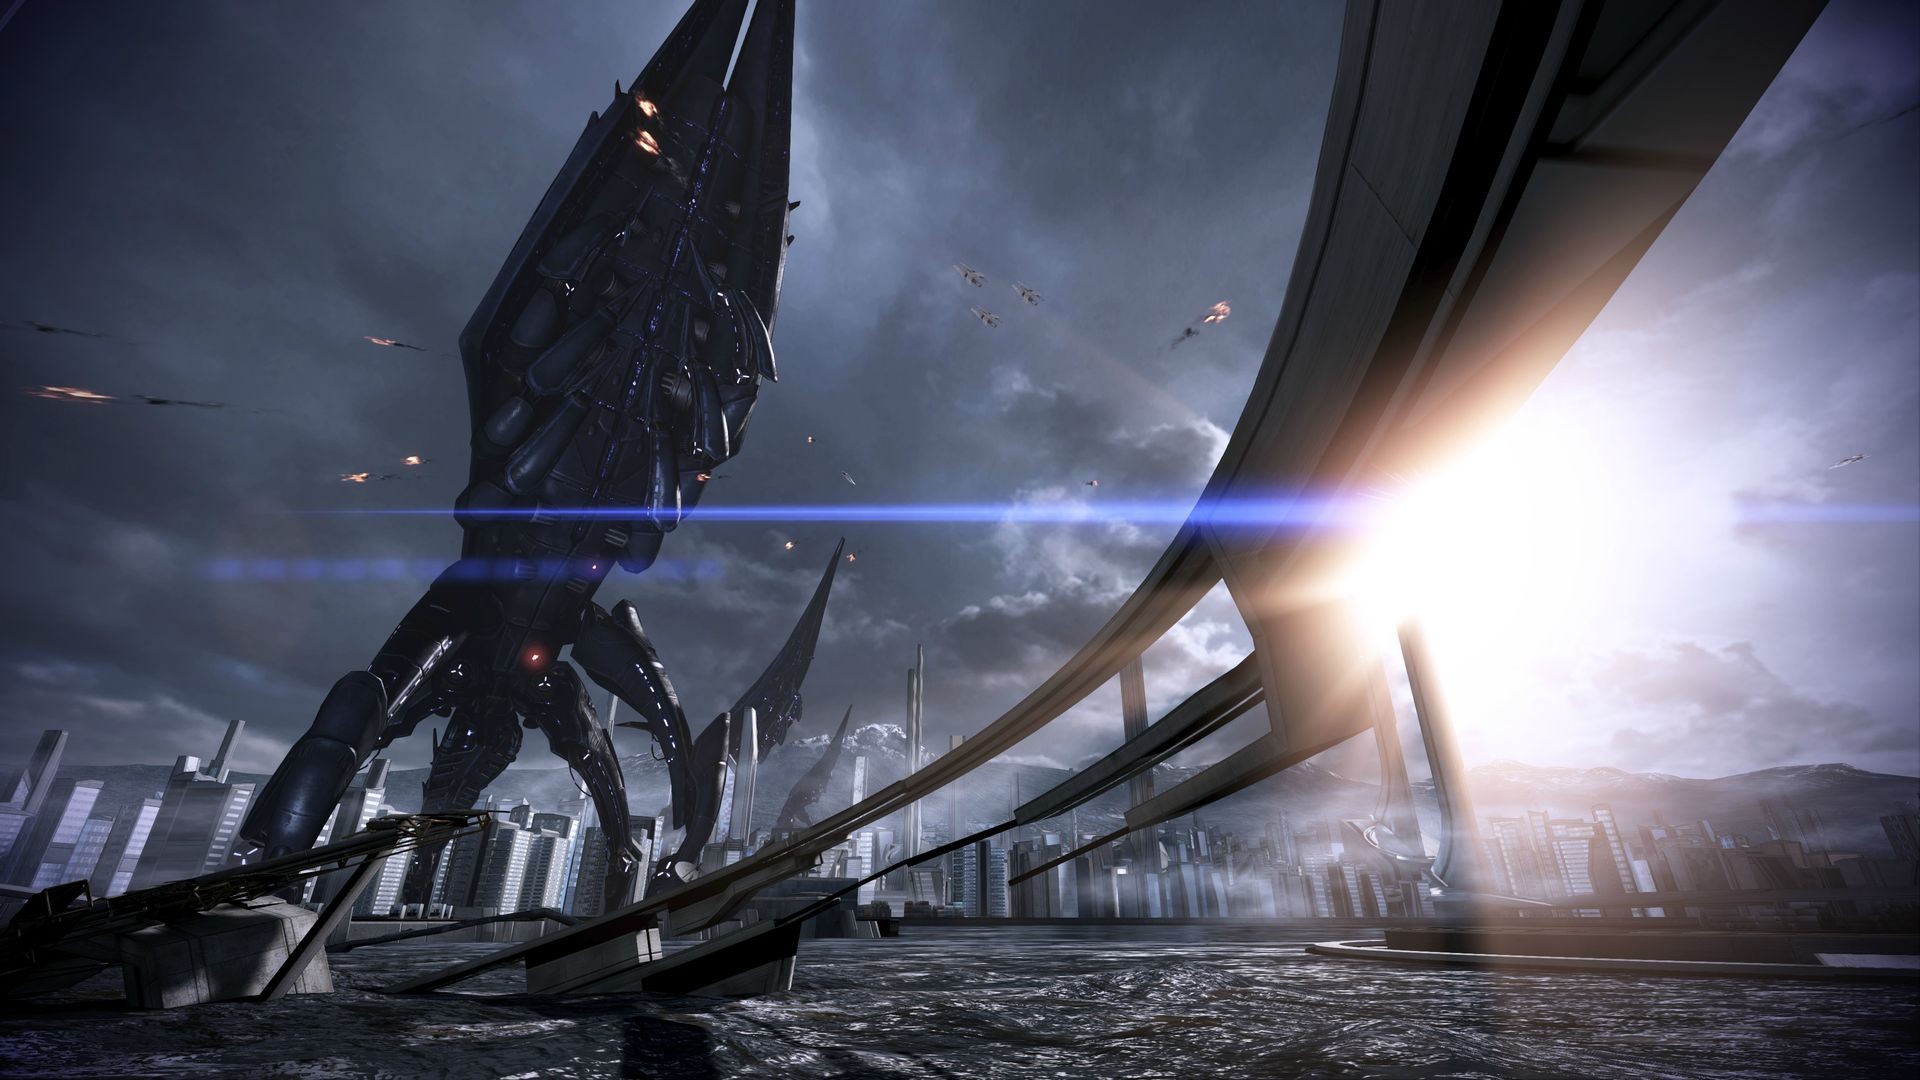 Descarga gratuita de fondo de pantalla para móvil de Mass Effect 3, Mass Effect, Videojuego.